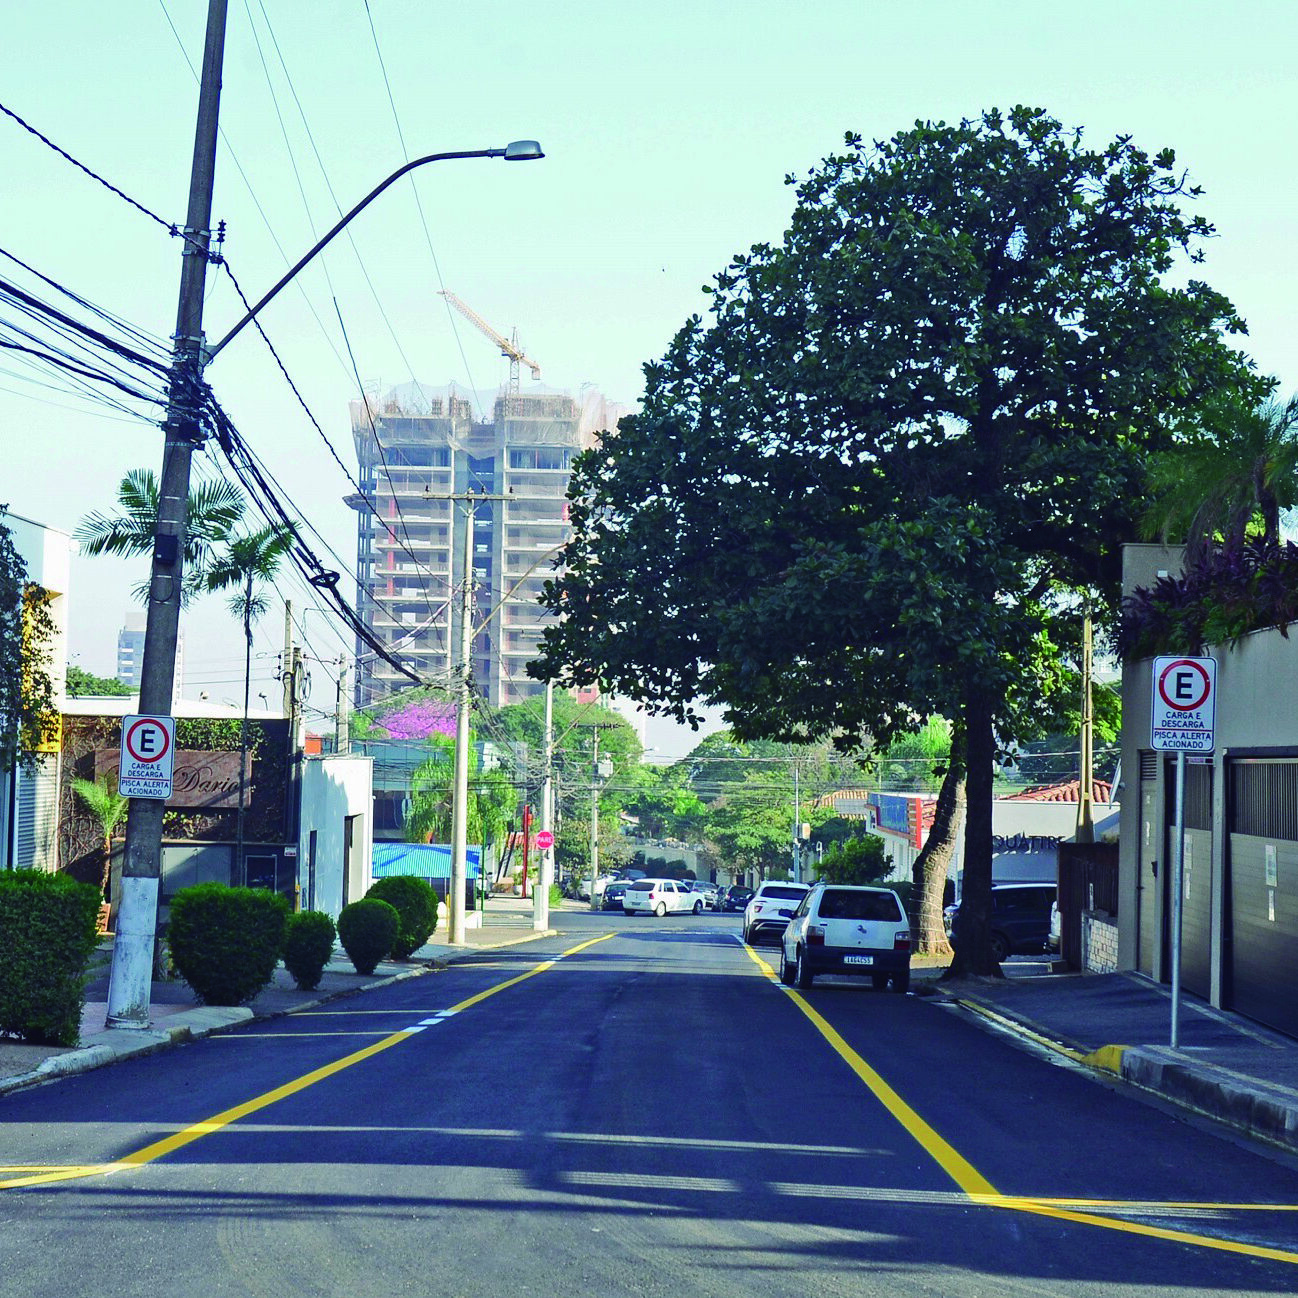 Objetivo é garantir mais segurança para pedestres, ciclistas, motociclistas e motoristas no trânsito. Foto: Divulgação/Prefeitura